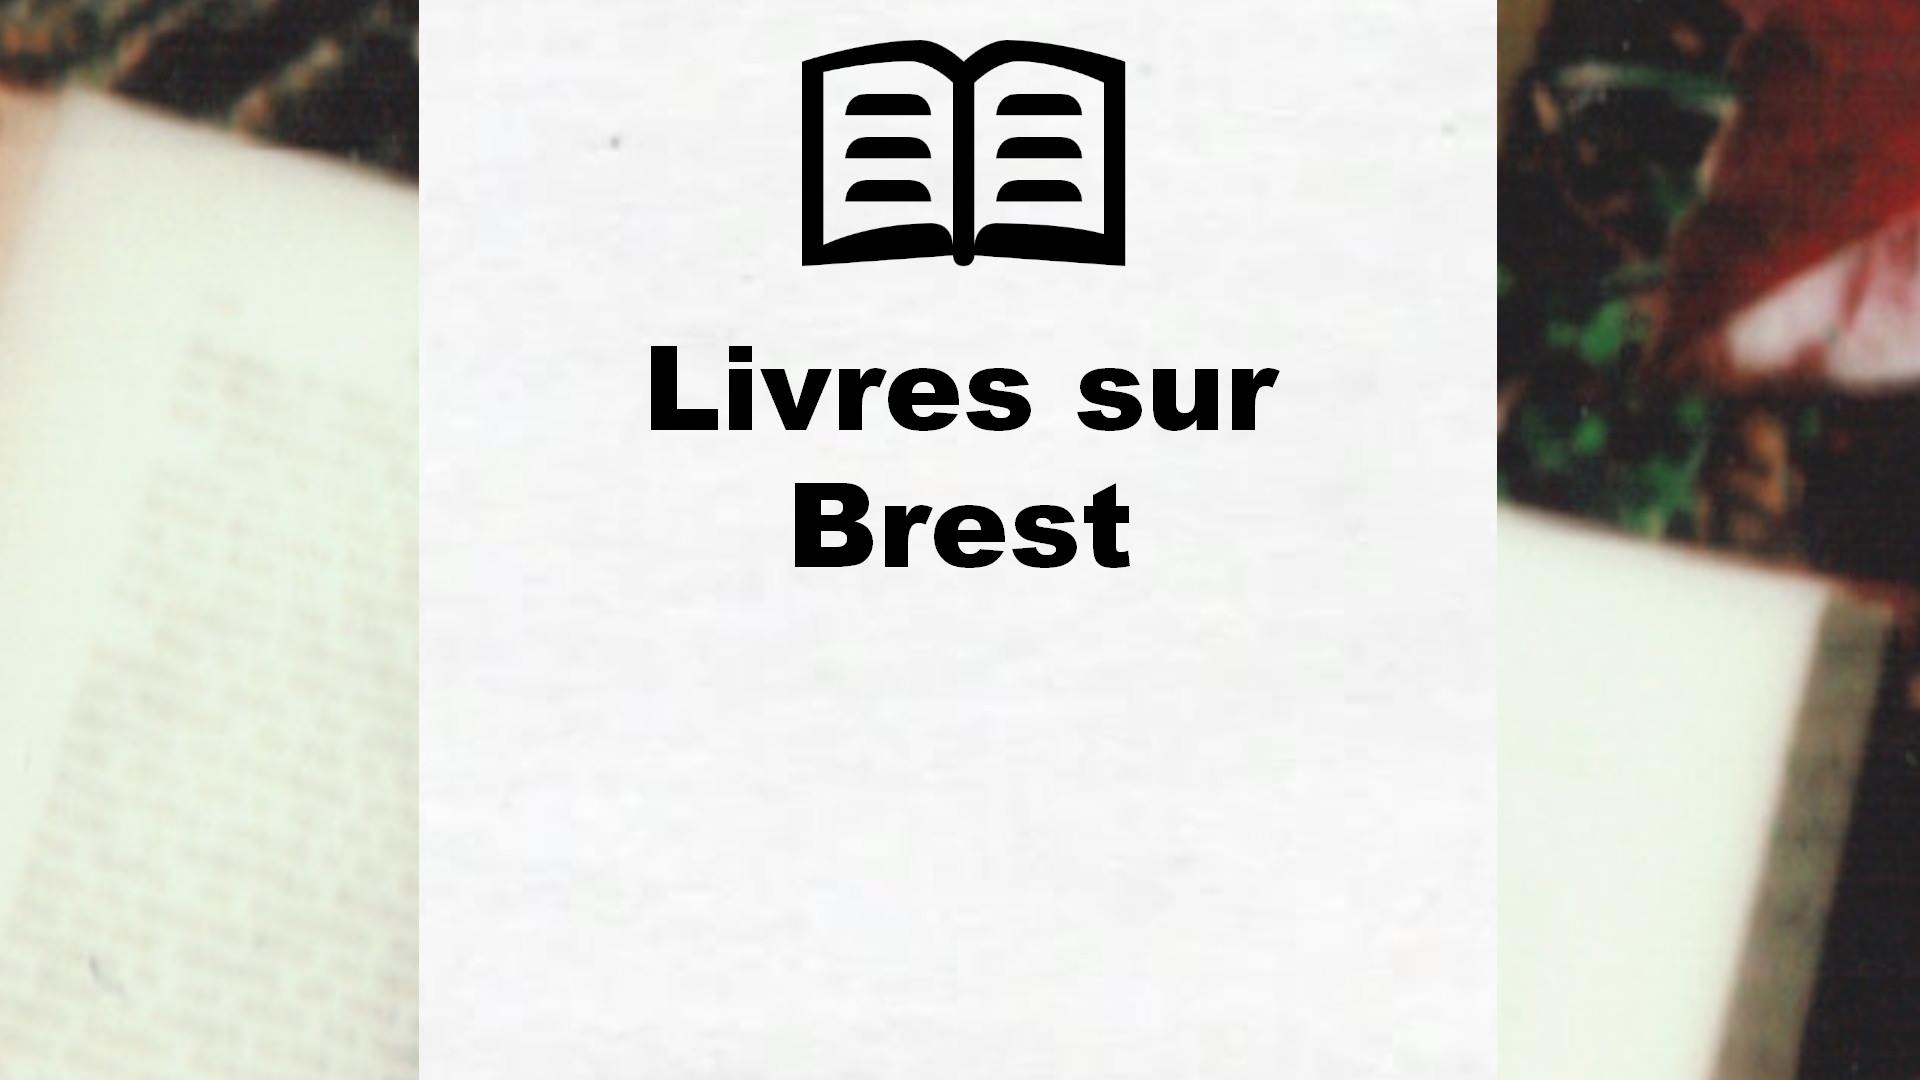 Livres sur Brest